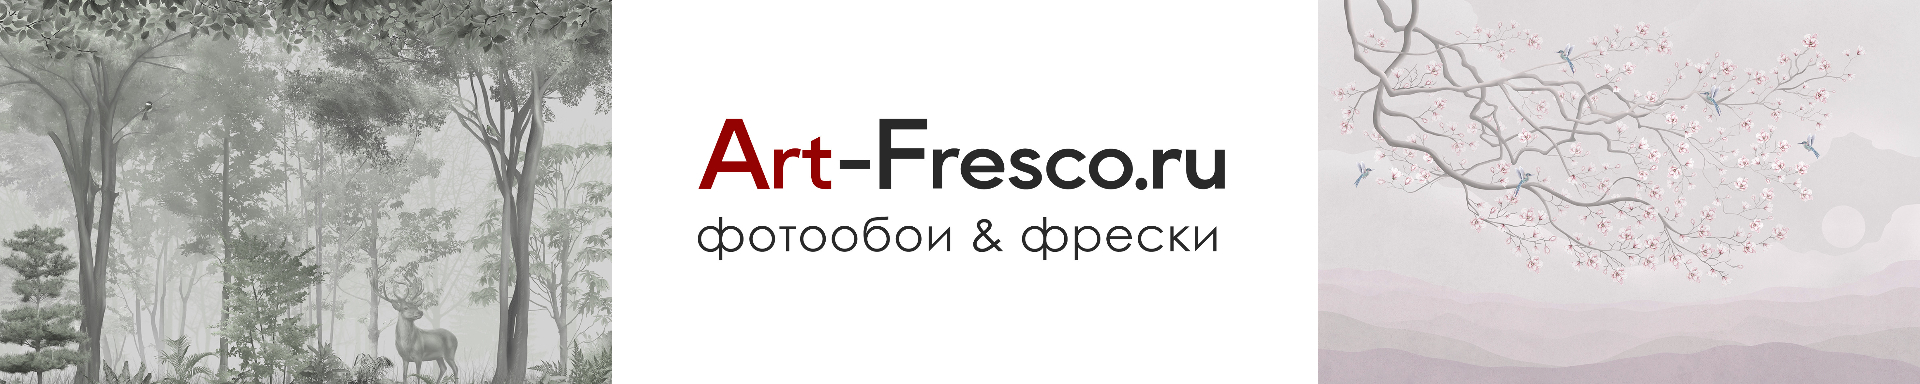 ArtFresco